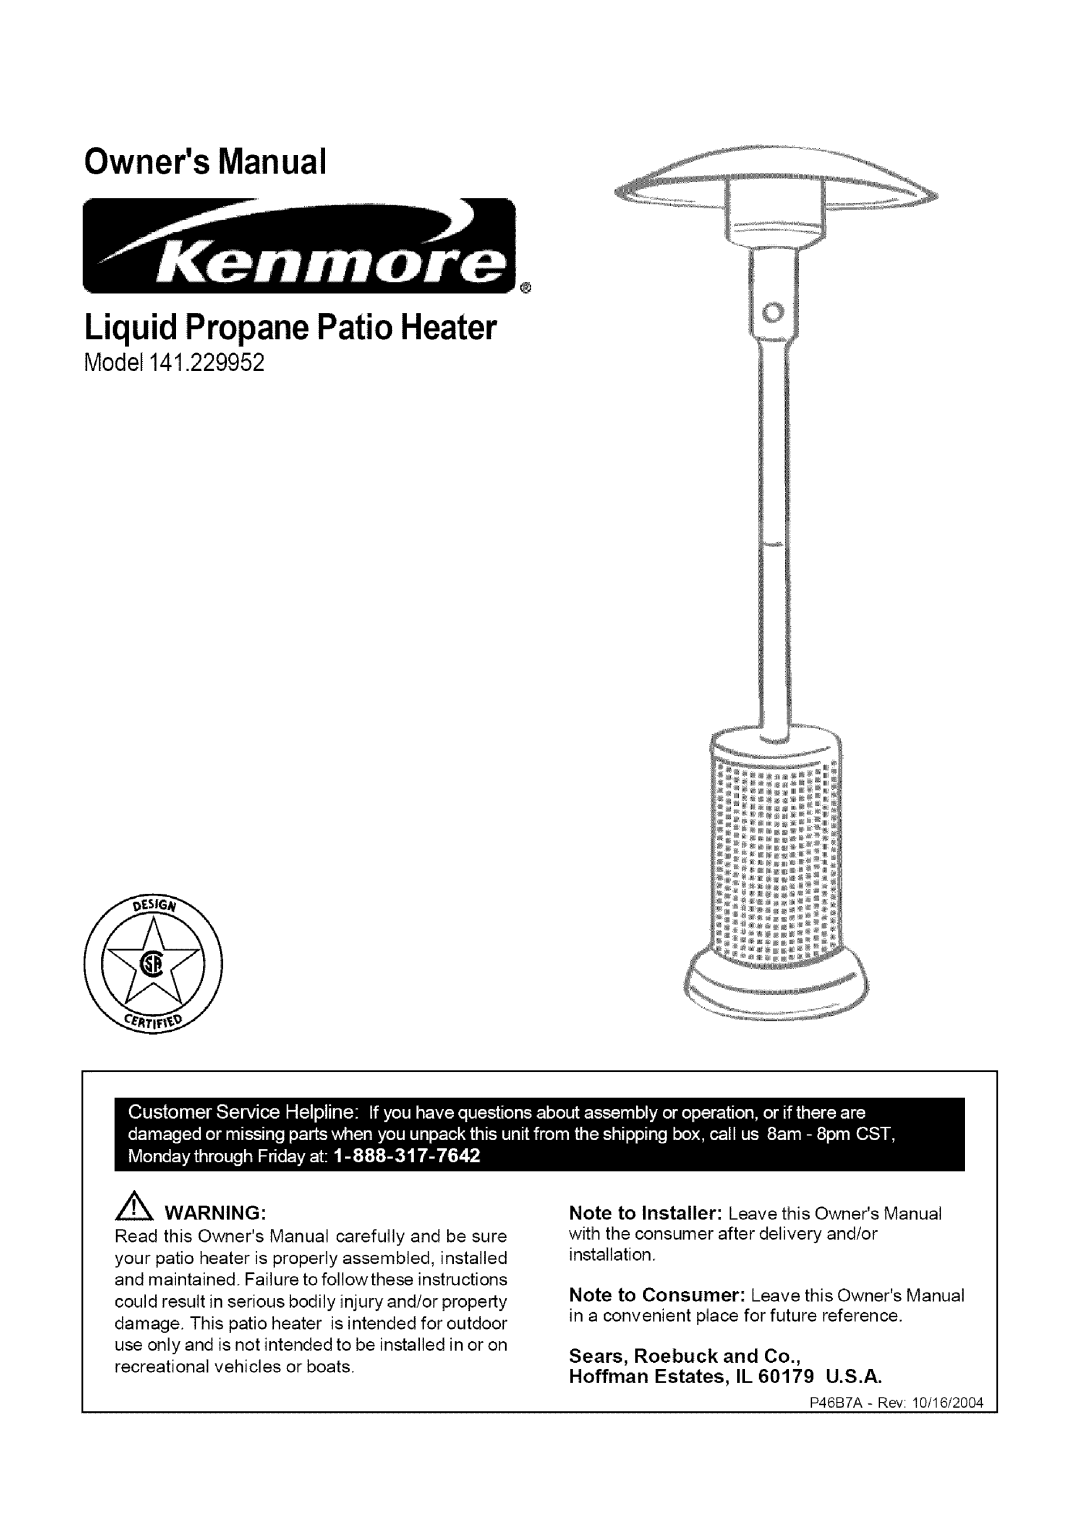 Kenmore owner manual OwnersManual LiquidPropanePatio Heater, Model141.229952 